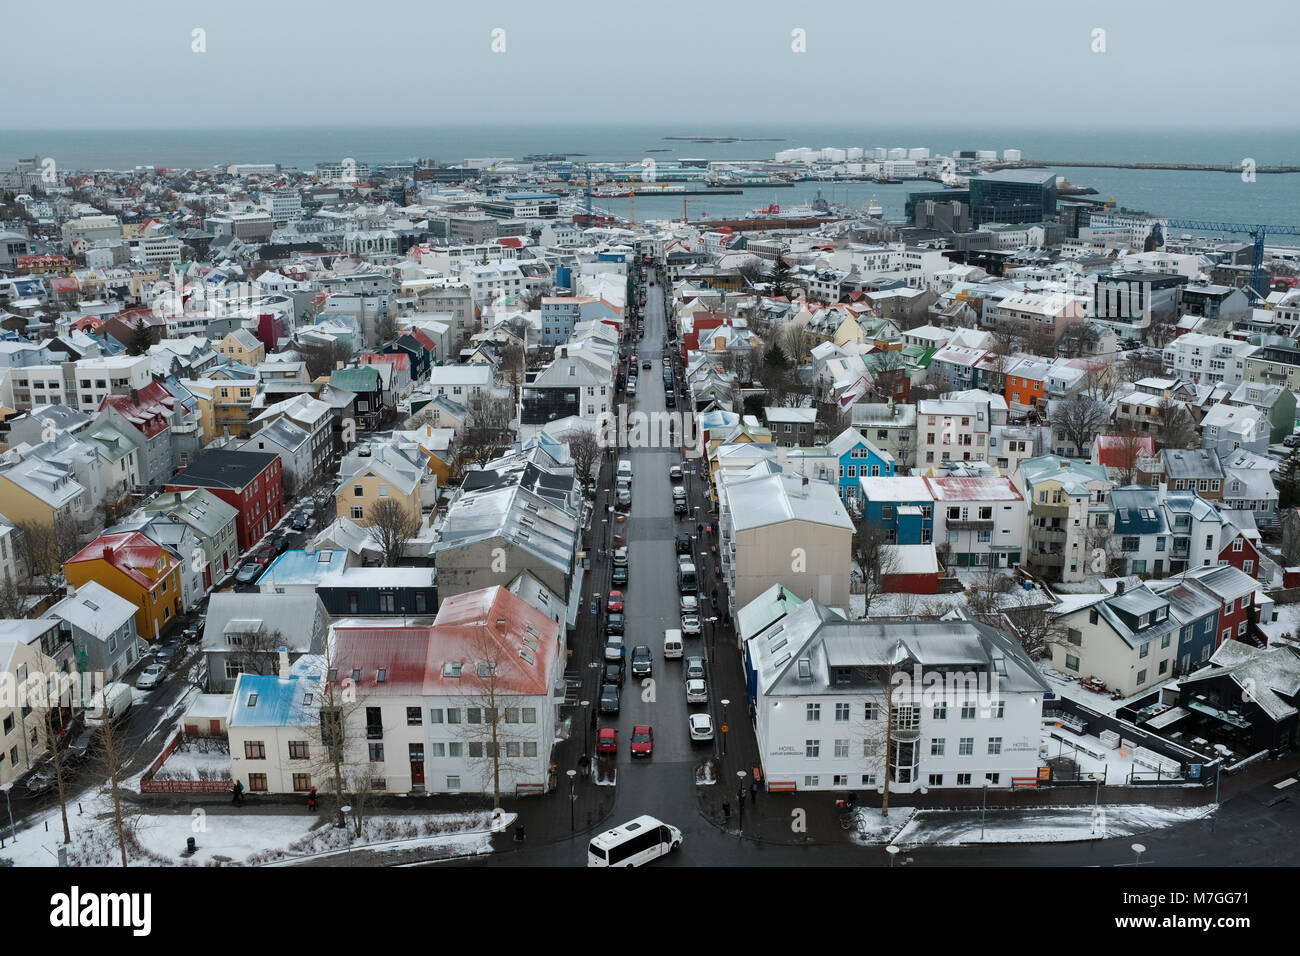 Vue aérienne de Reykjavik, Islande, la capitale la plus au nord du monde, tourné à partir du haut de la cathédrale Hallgrímskirkja Banque D'Images